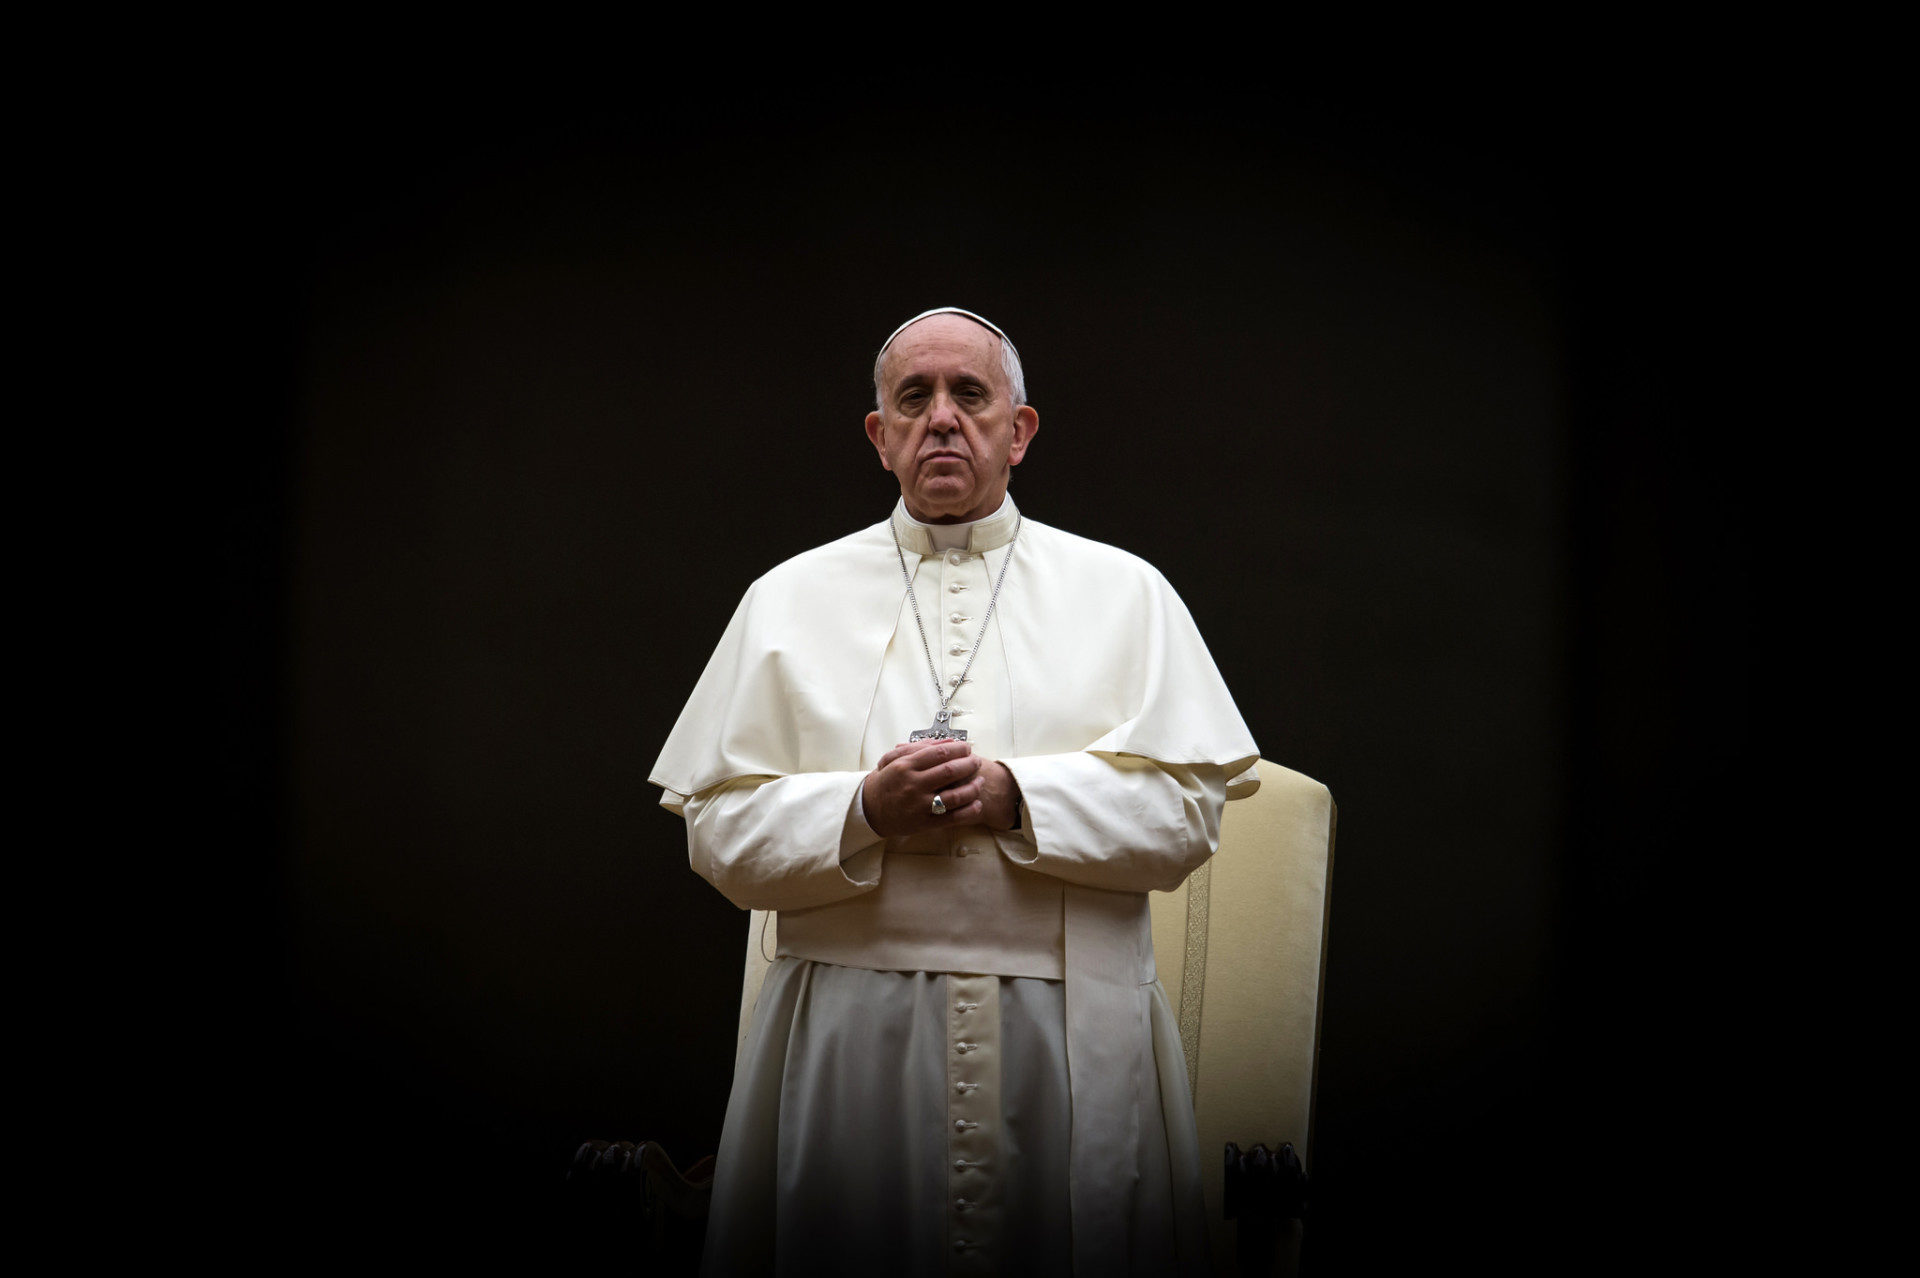 Le pape François a prié pour les victimes du terrorisme (Photo: Catholic Church England/Flickr/CC BY-NC-SA 2.0)